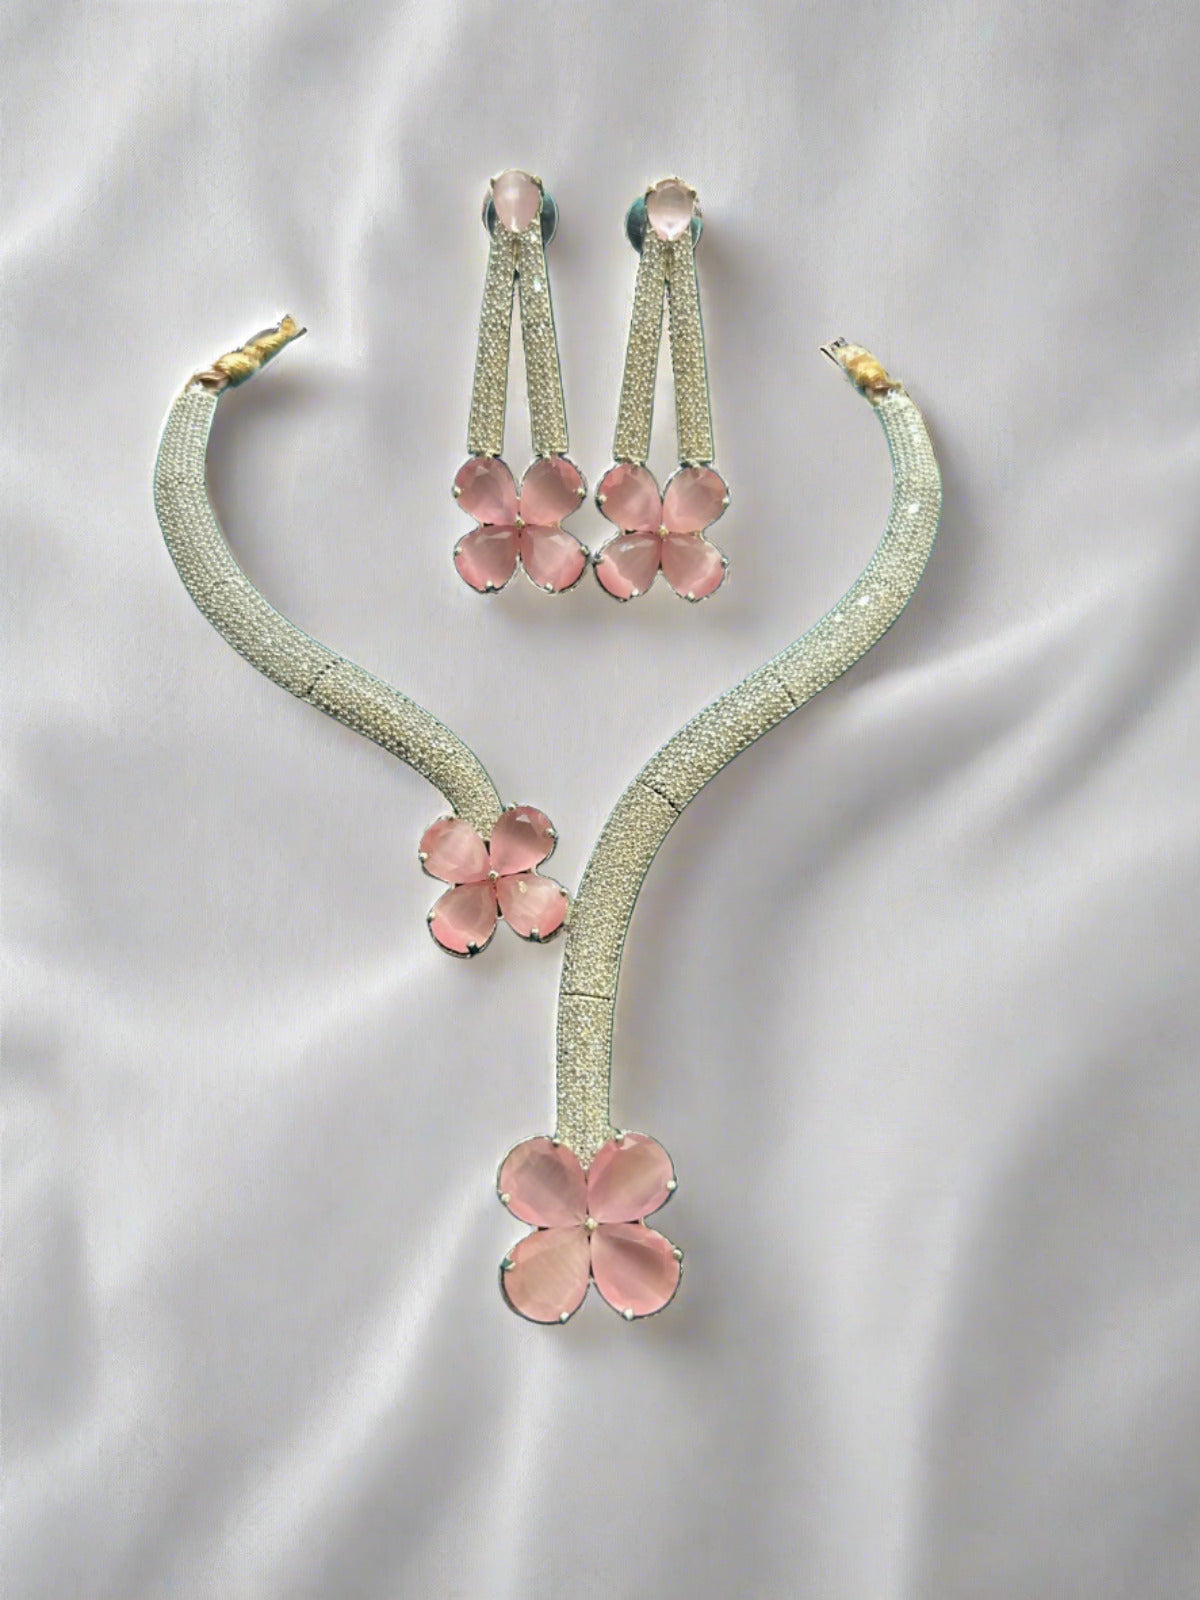 Bufferfly necklace set